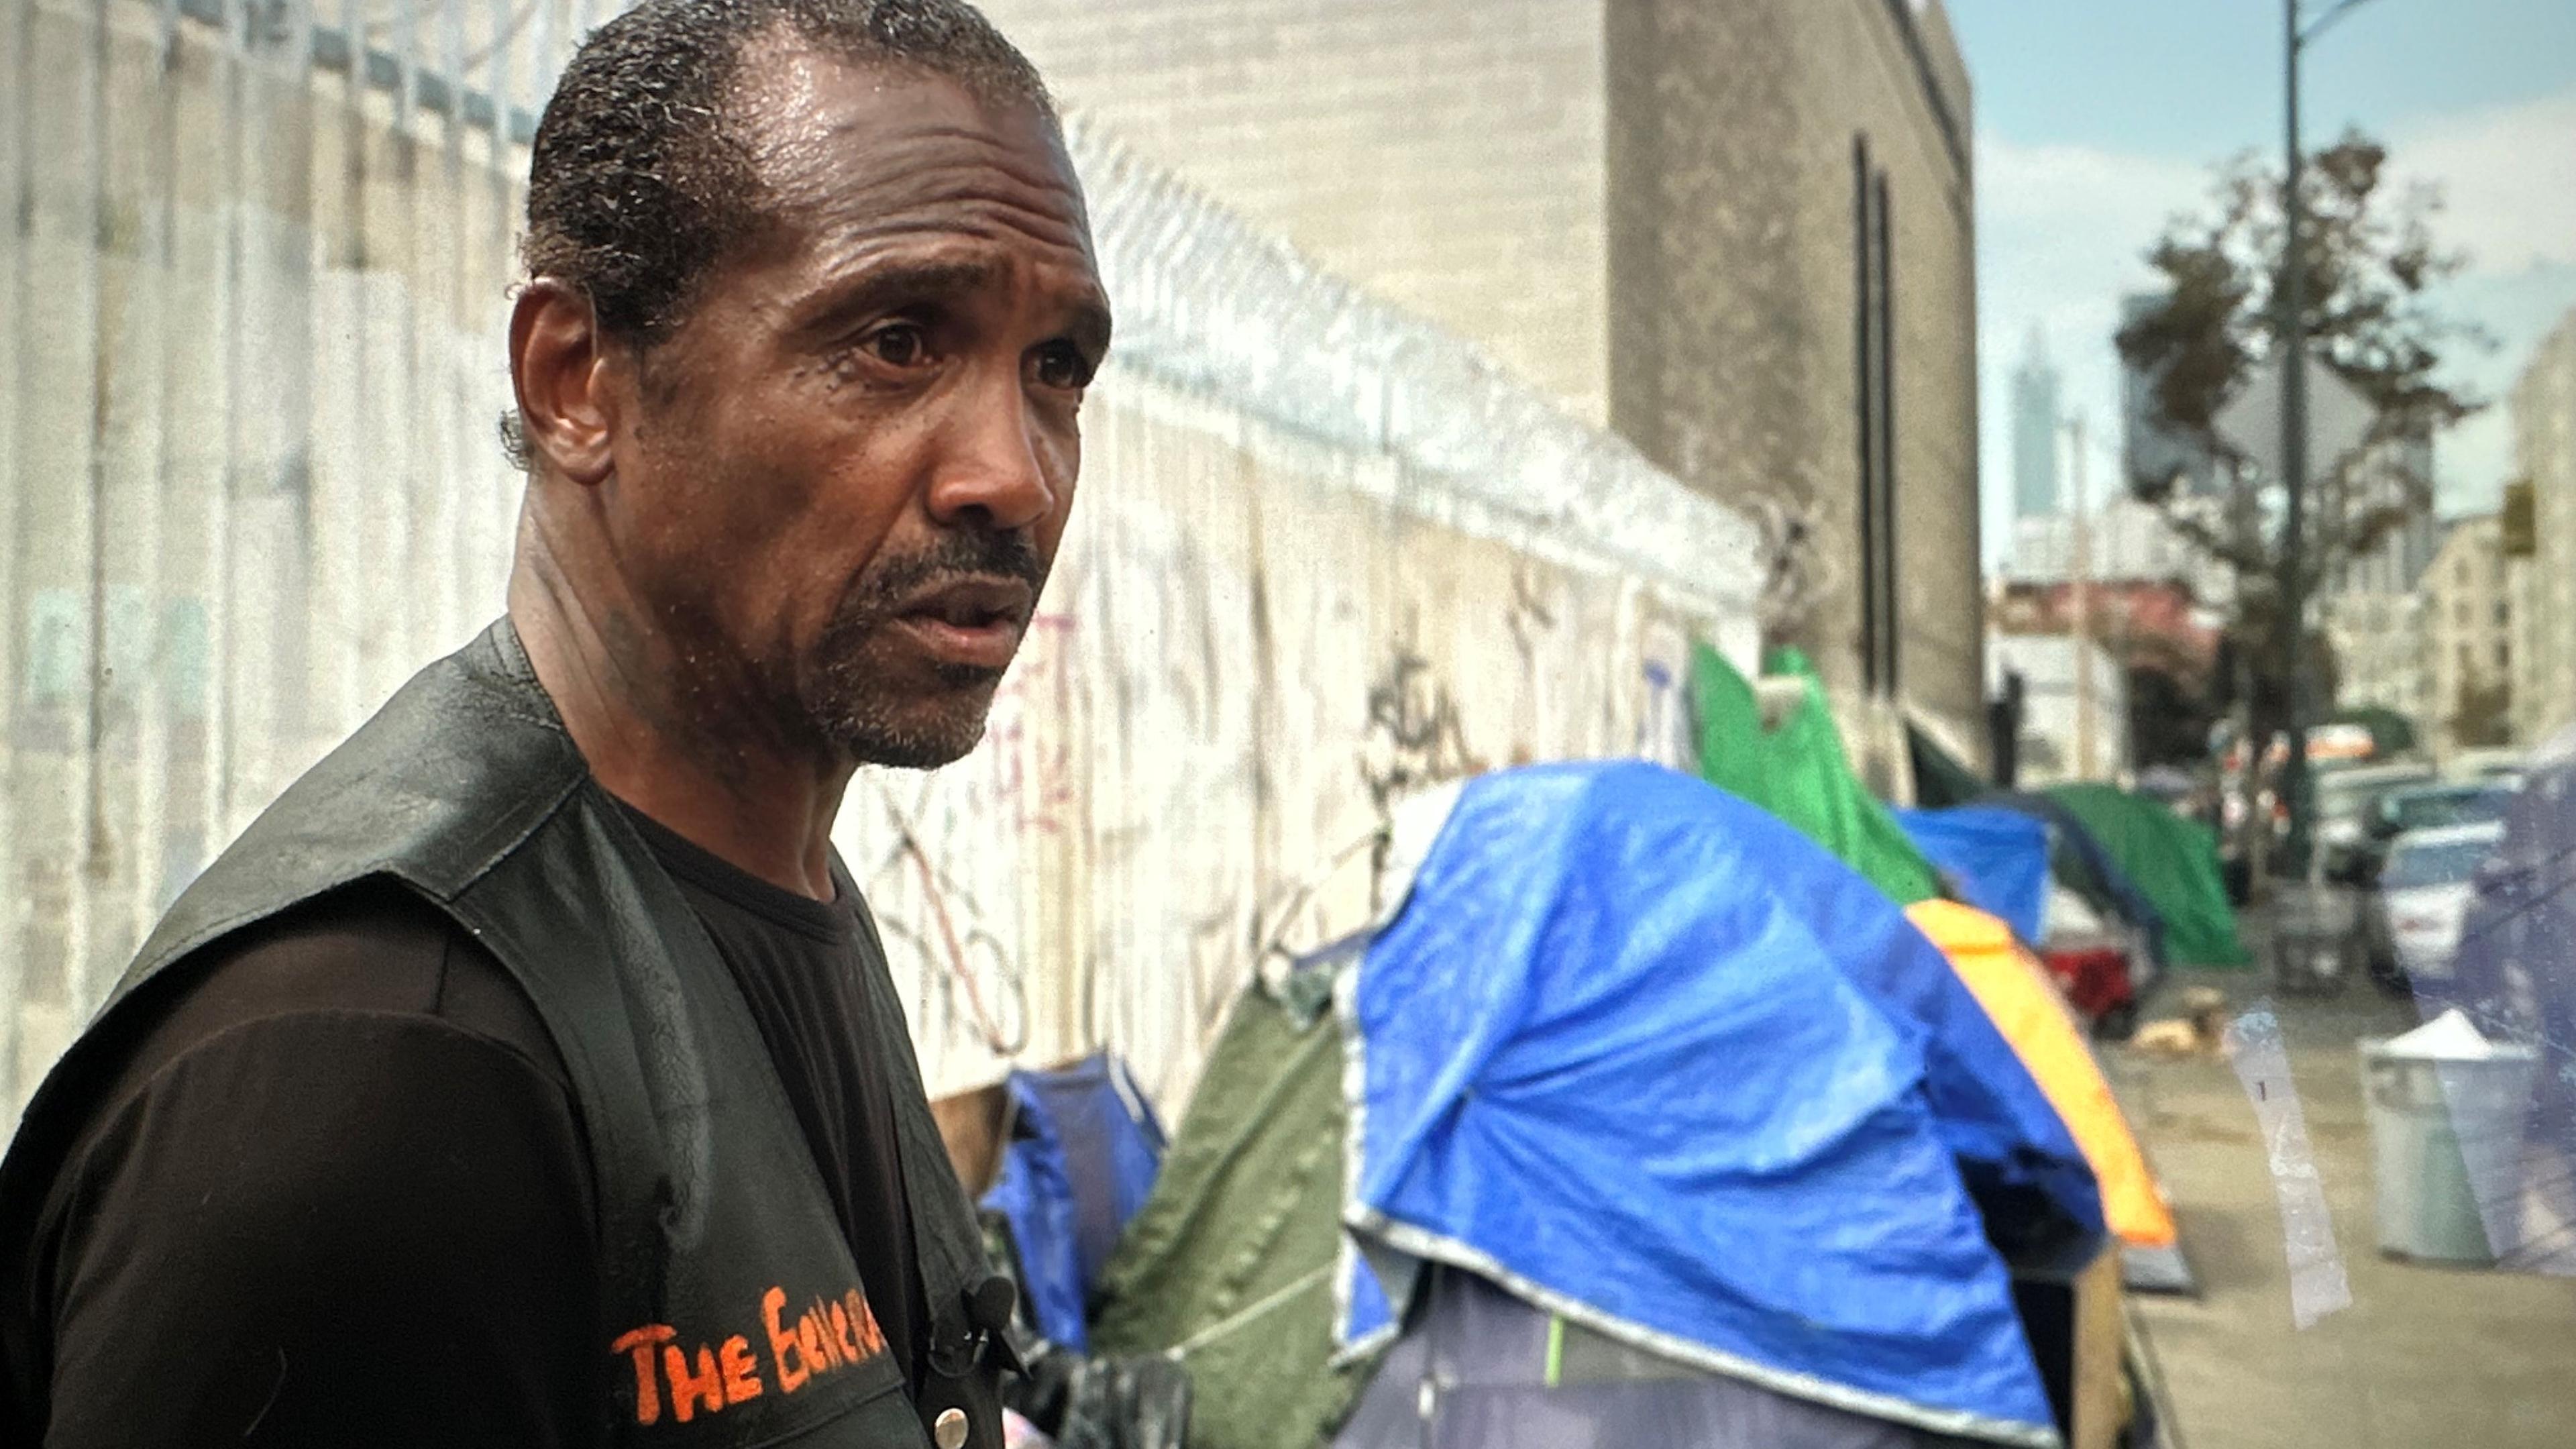 General Dogon, Obdachloser in LA, steht vor einigen Zelten, die am Wegrand stehen.